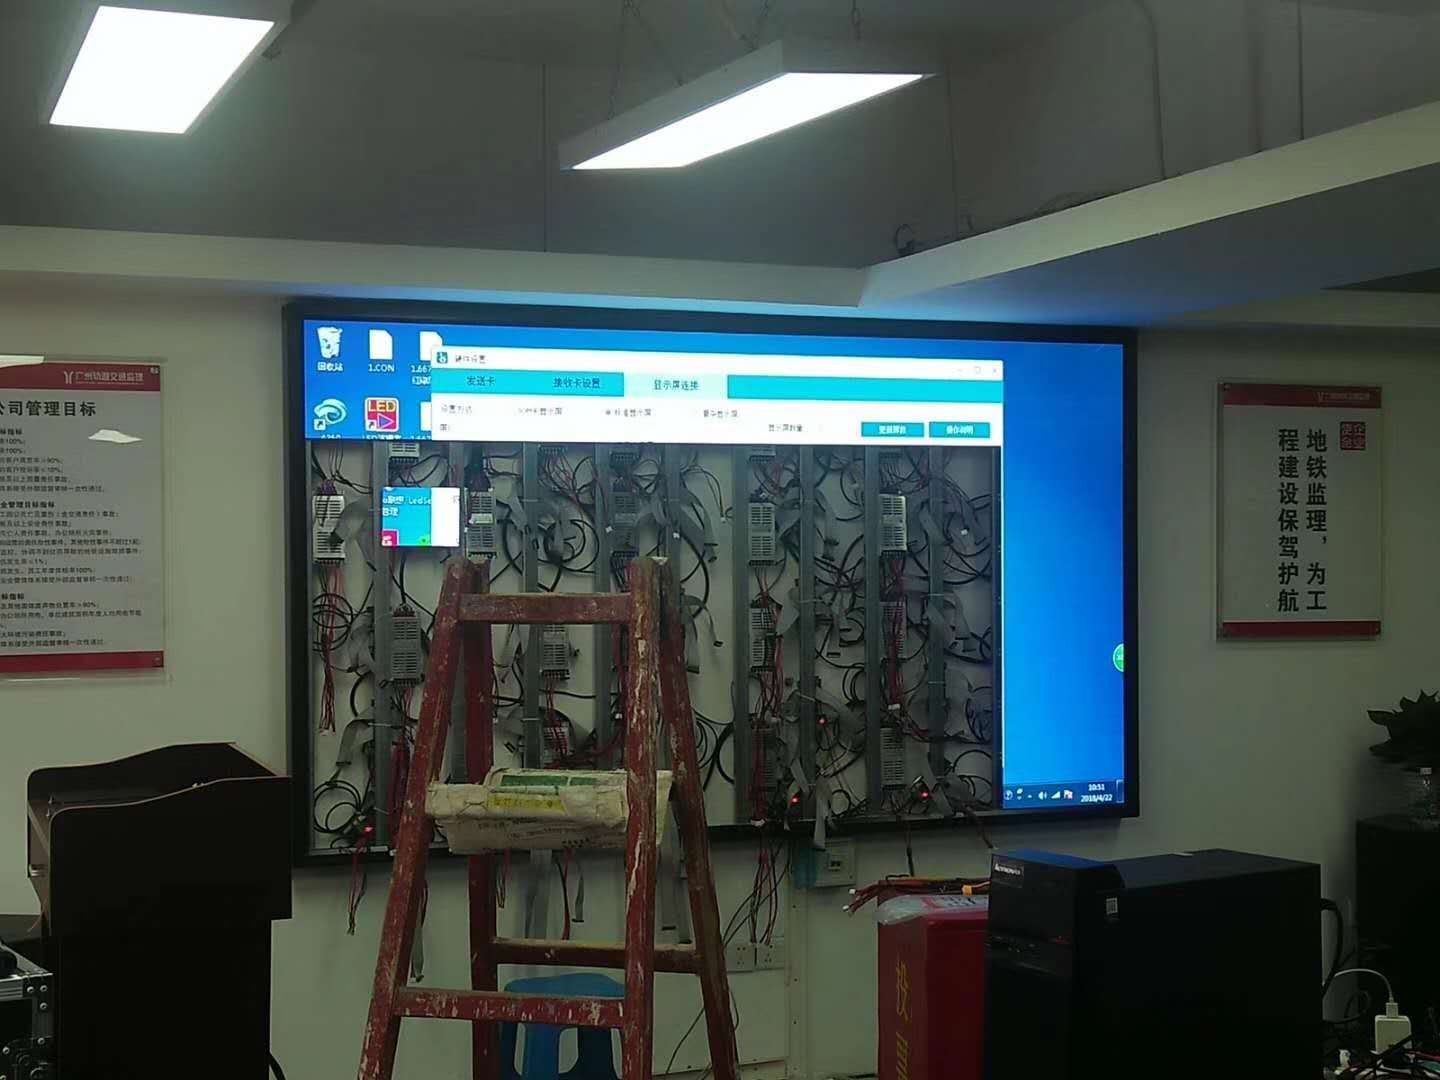 乌当会议室LED显示屏